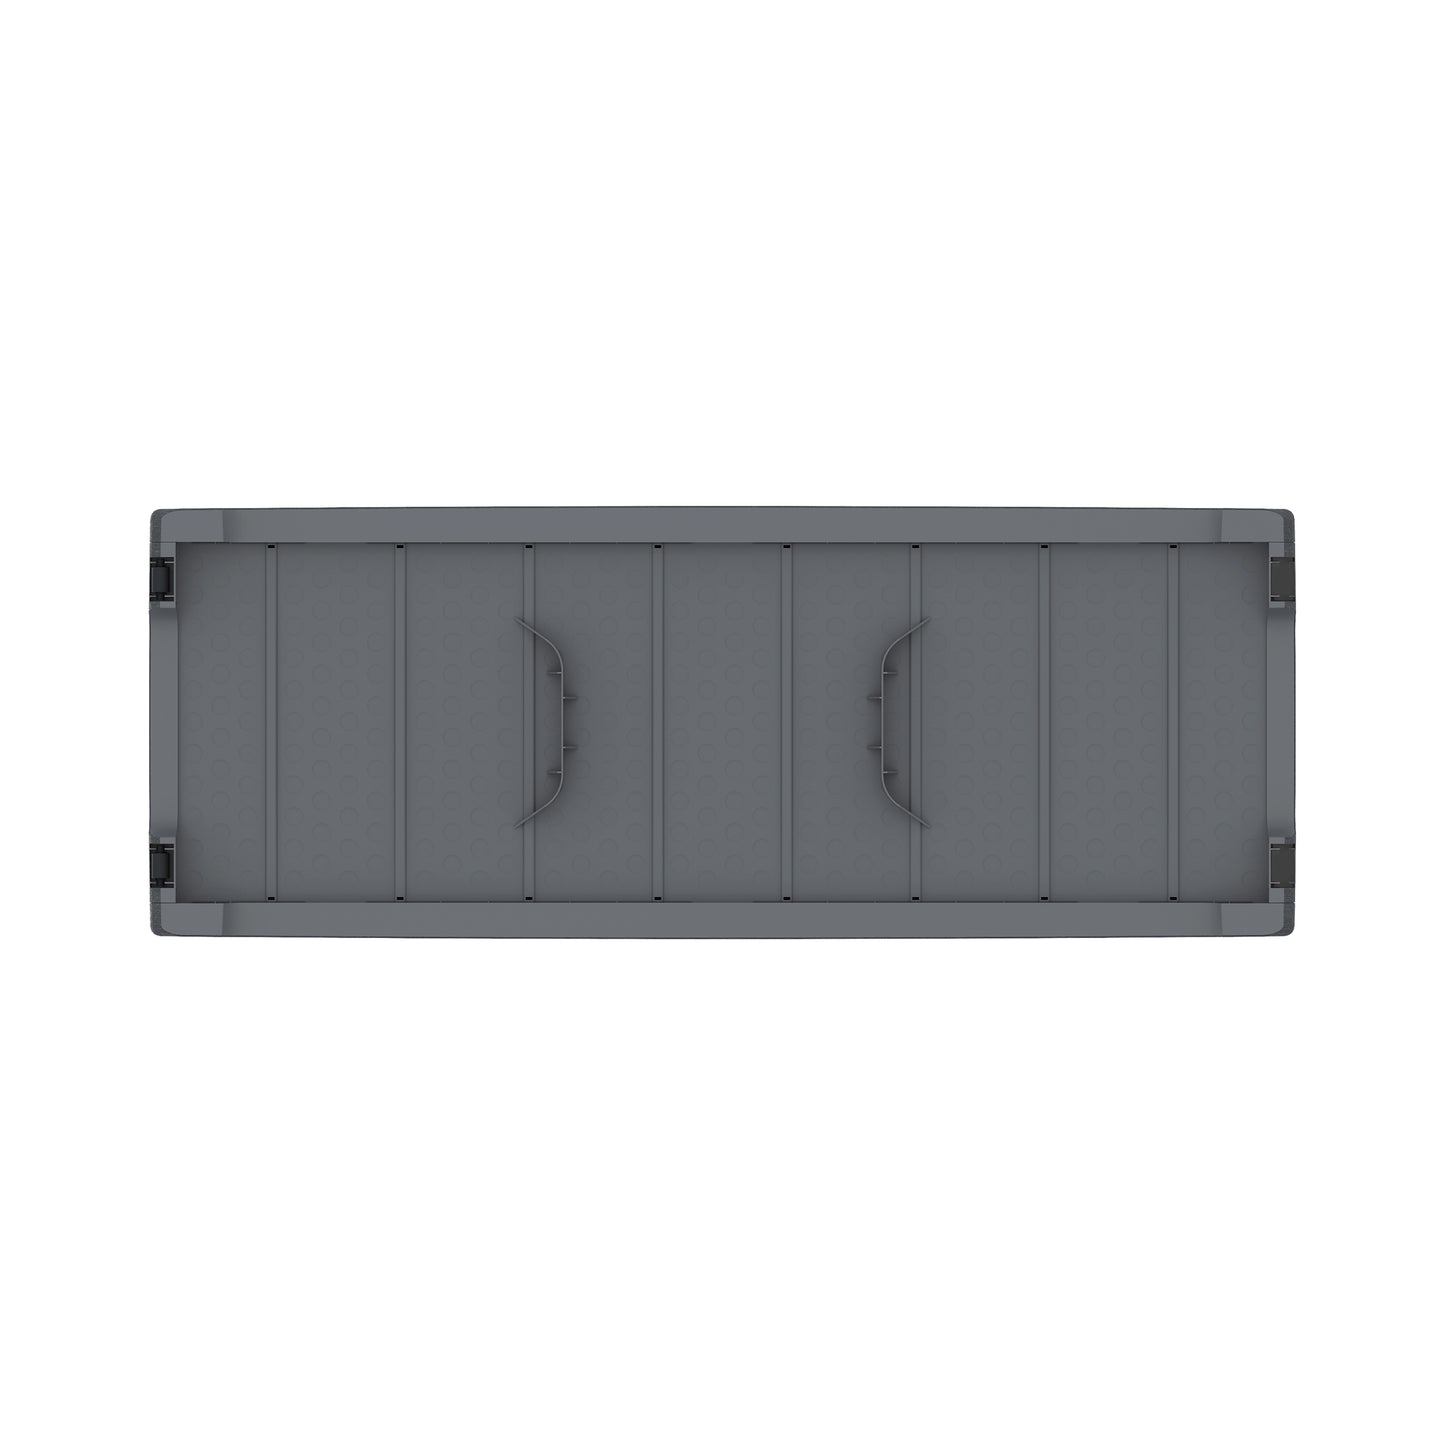 Storage Deck Box 270L- Cosmoplast KSA